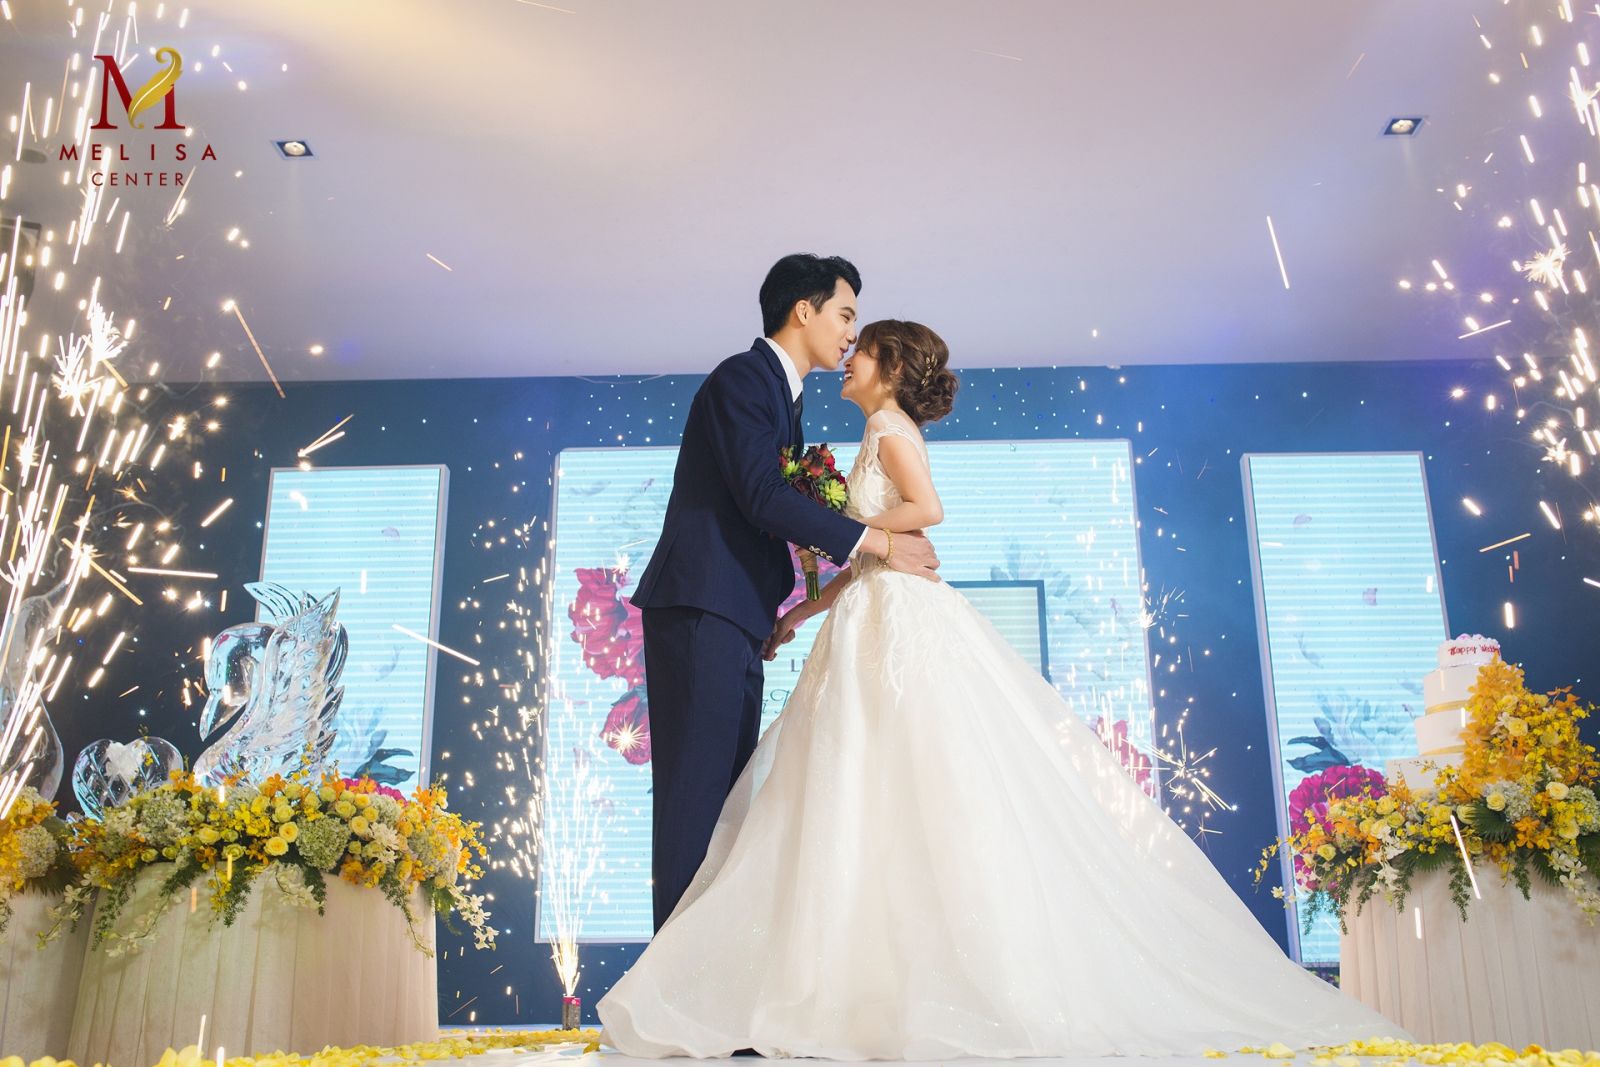 Tặng váy cưới Linh Nga trị giá 25 triệu khi đặt tiệc tháng 4 5